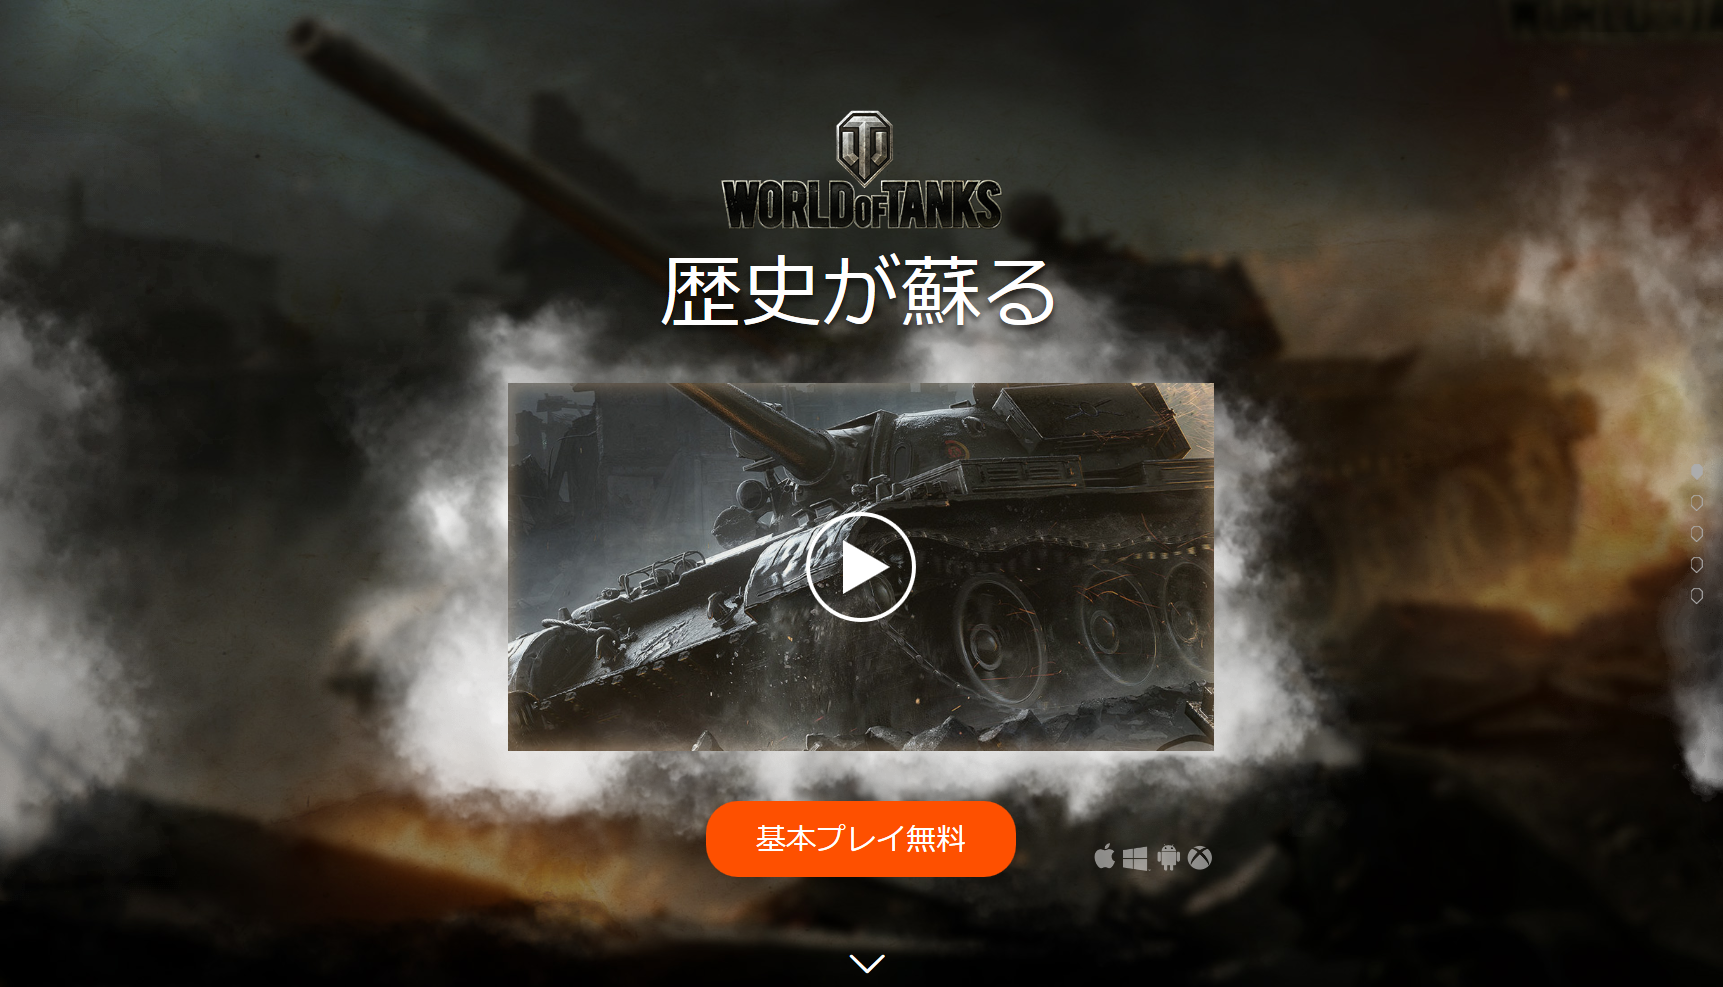 World of Tanks—基本プレイ無料オンラインタンクバトルゲーム。今すぐダウンロード!